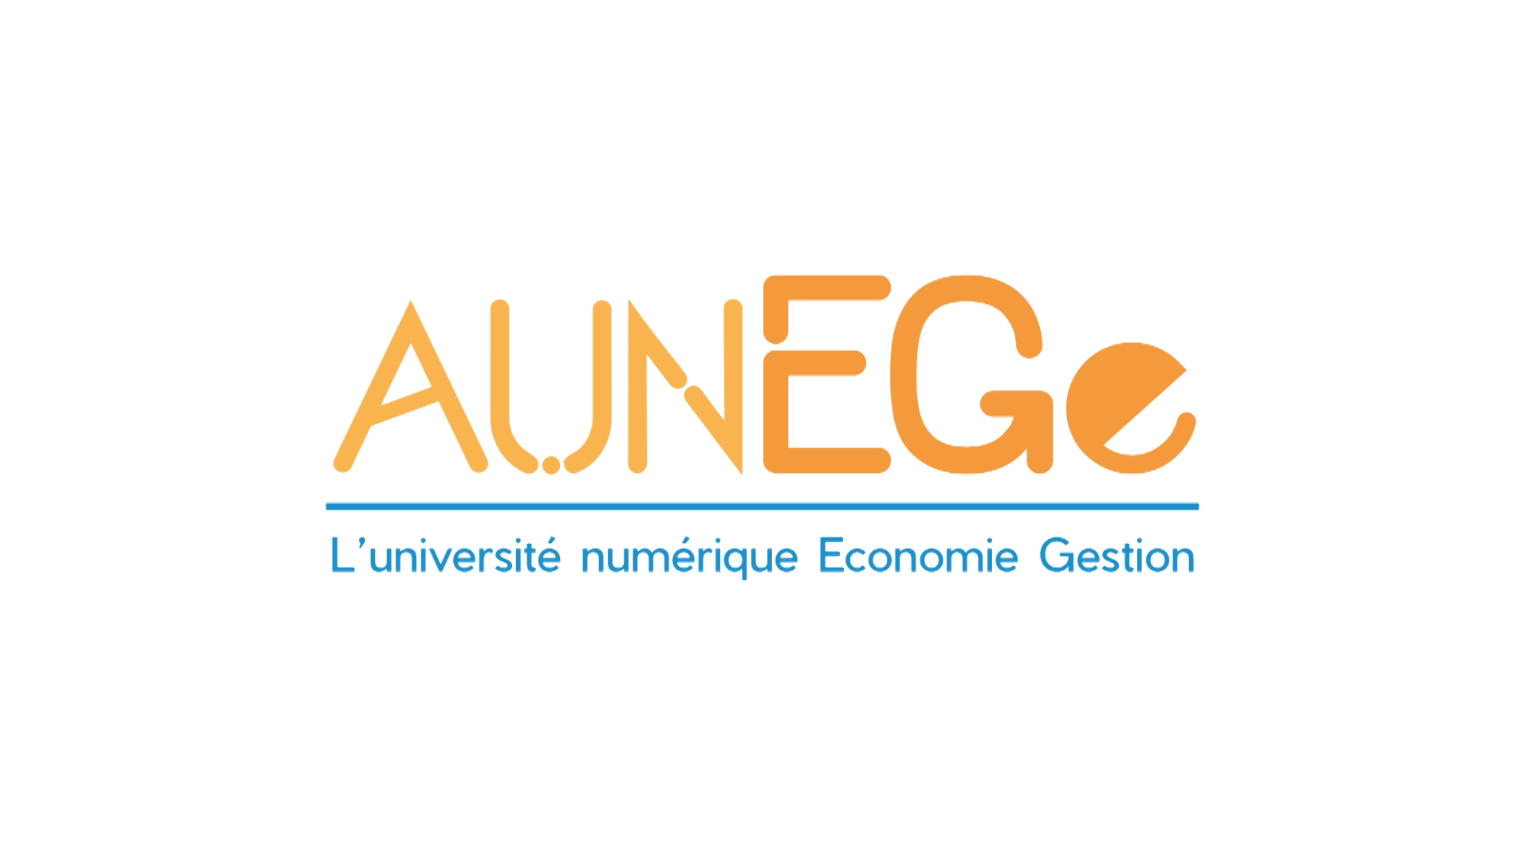 AUNEGE - Utiliser des ressources éducatives libres en formation tout au long de la vie